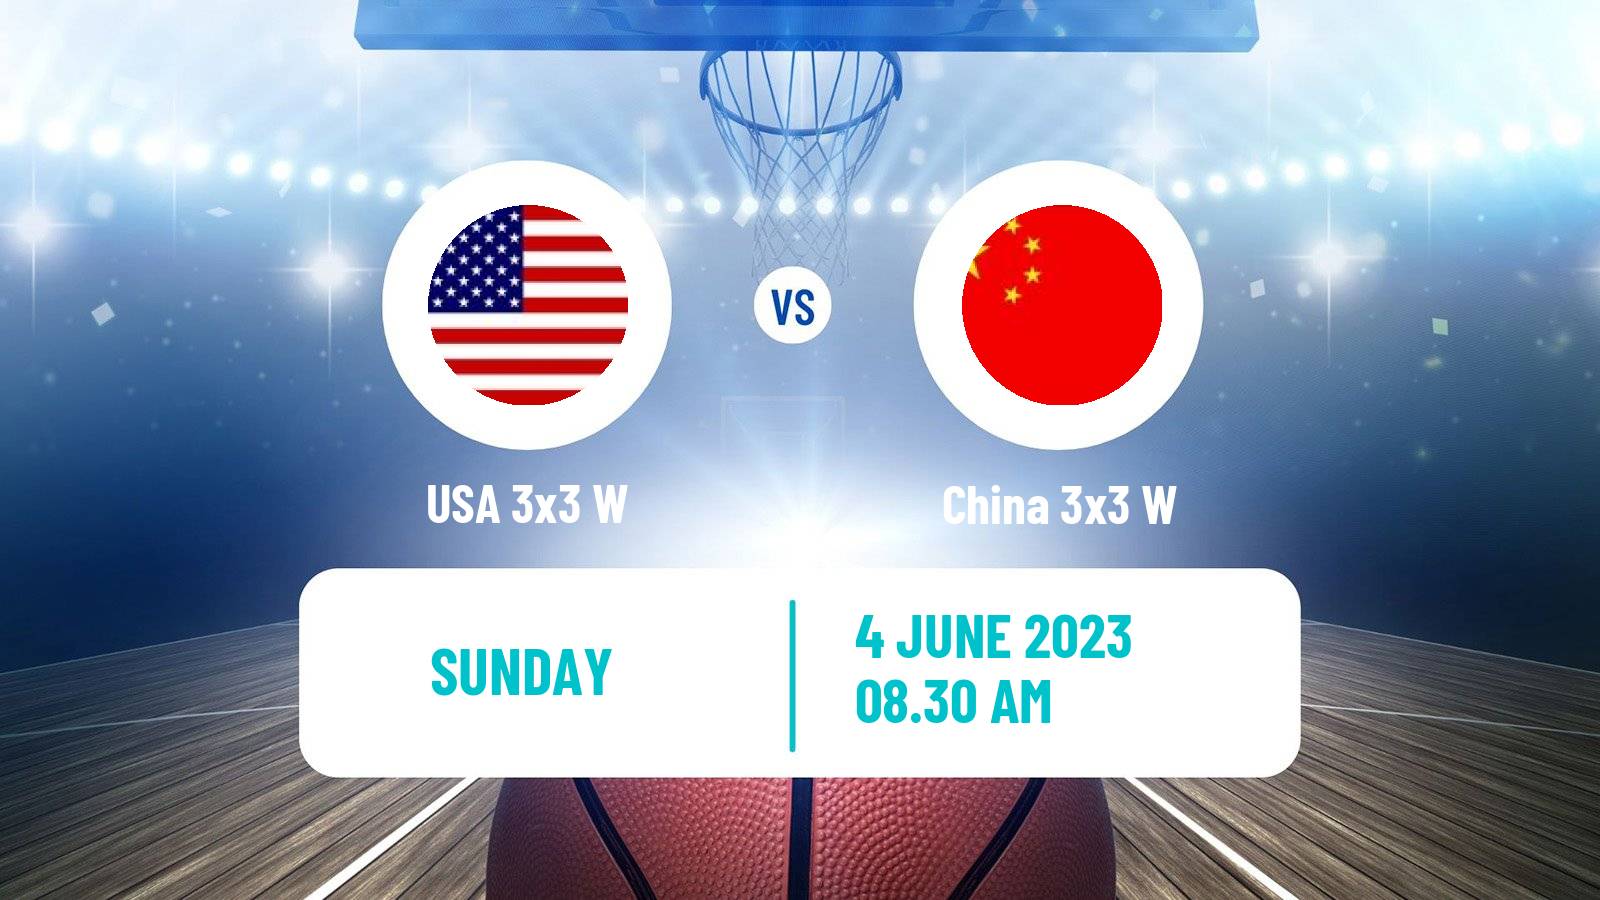 Basketball World Cup Basketball 3x3 Women USA 3x3 W - China 3x3 W